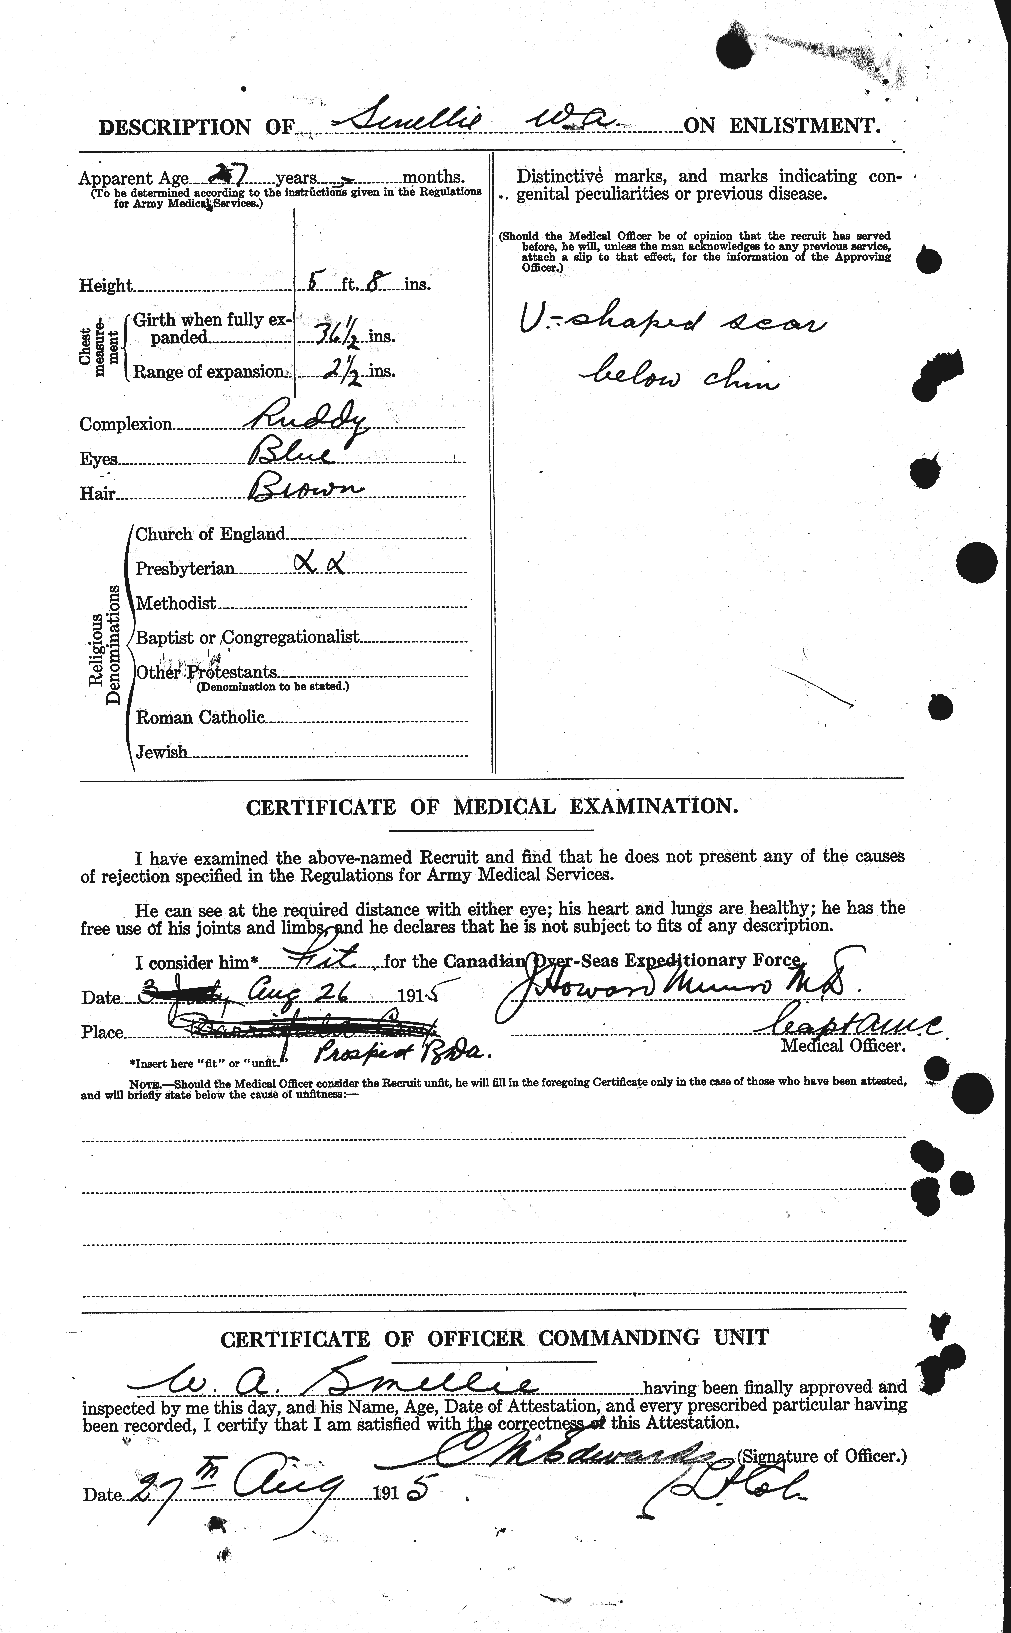 Dossiers du Personnel de la Première Guerre mondiale - CEC 101877b